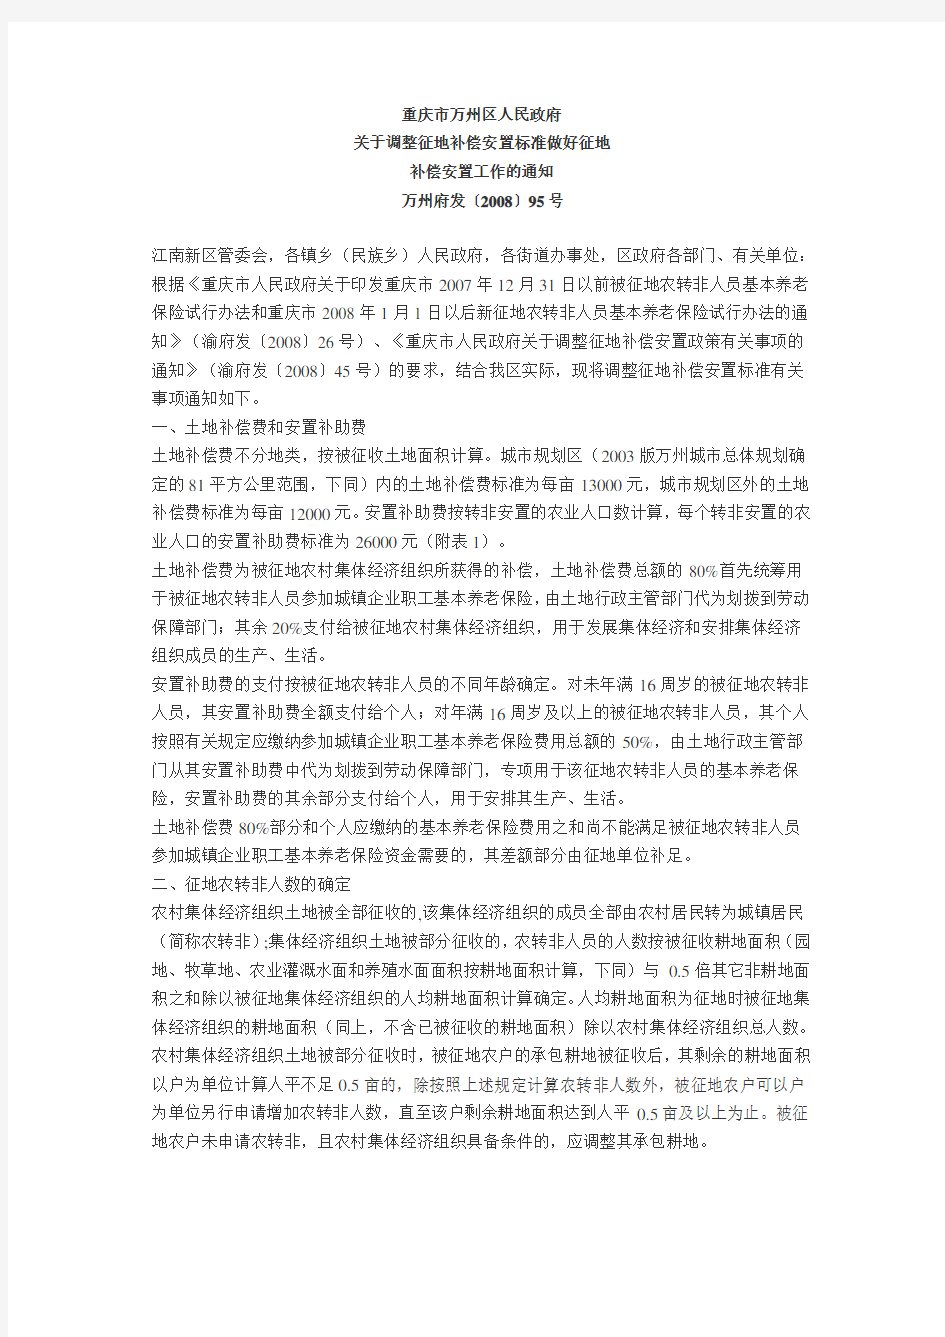 重庆市万州区人民政府关于调整征地补偿安置标准做好征地补偿安置工作的通知